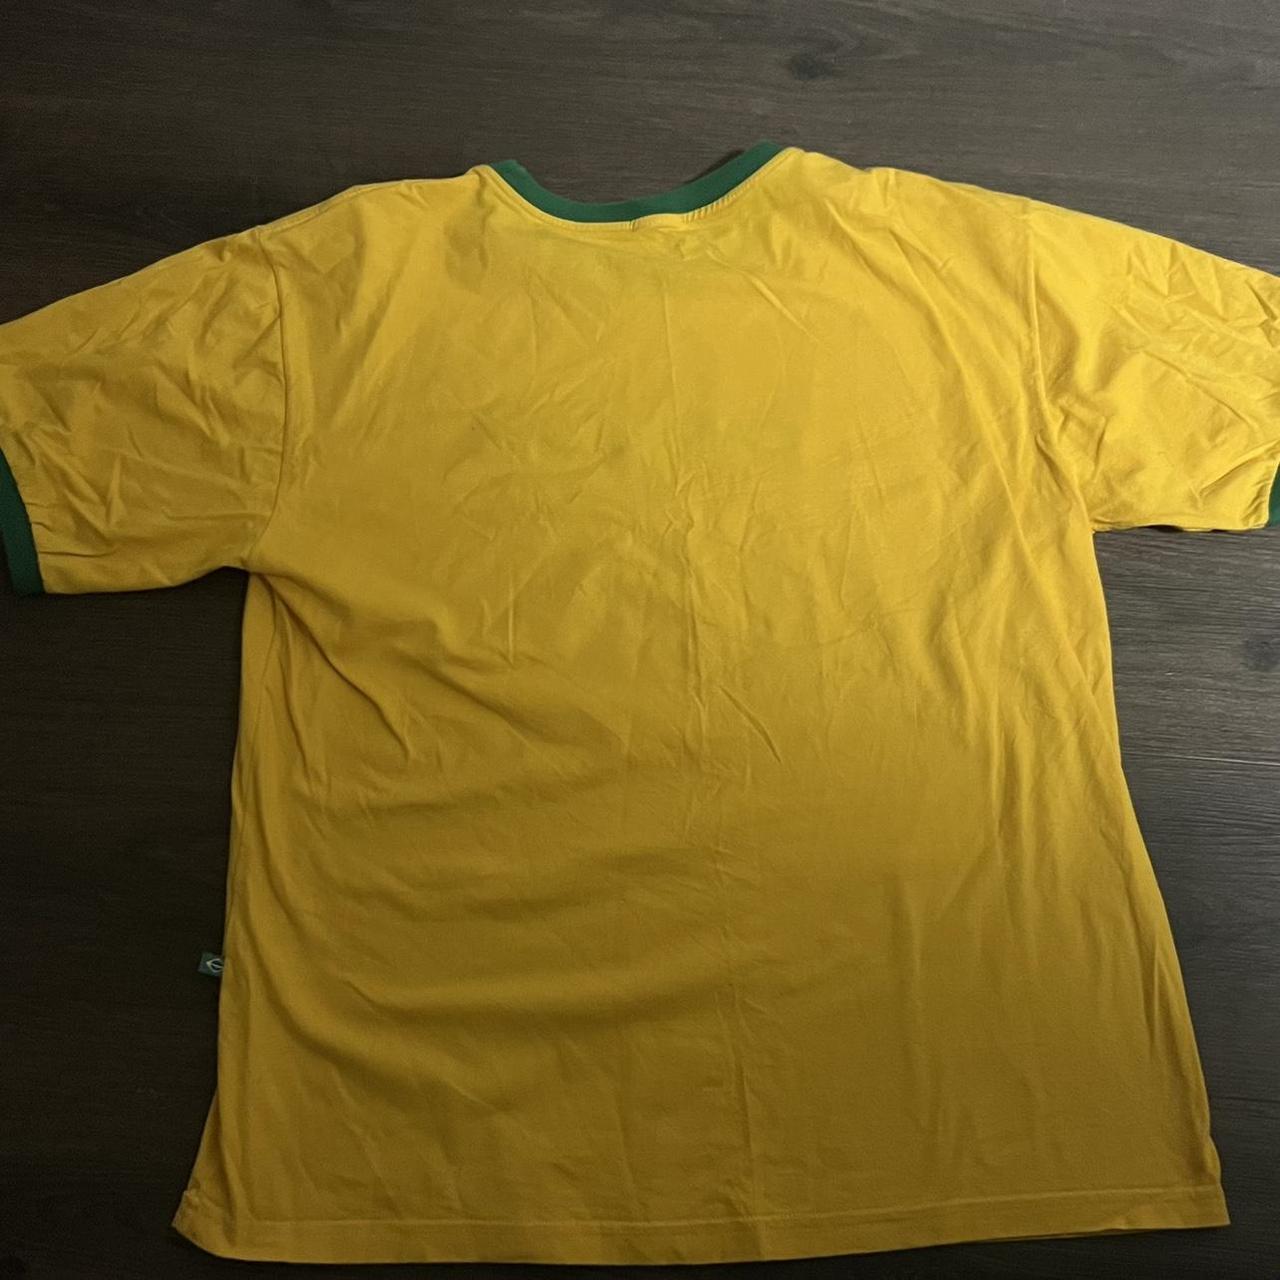 Yellow Brazil CAIPIRINHA t shirt #braziljersey... - Depop